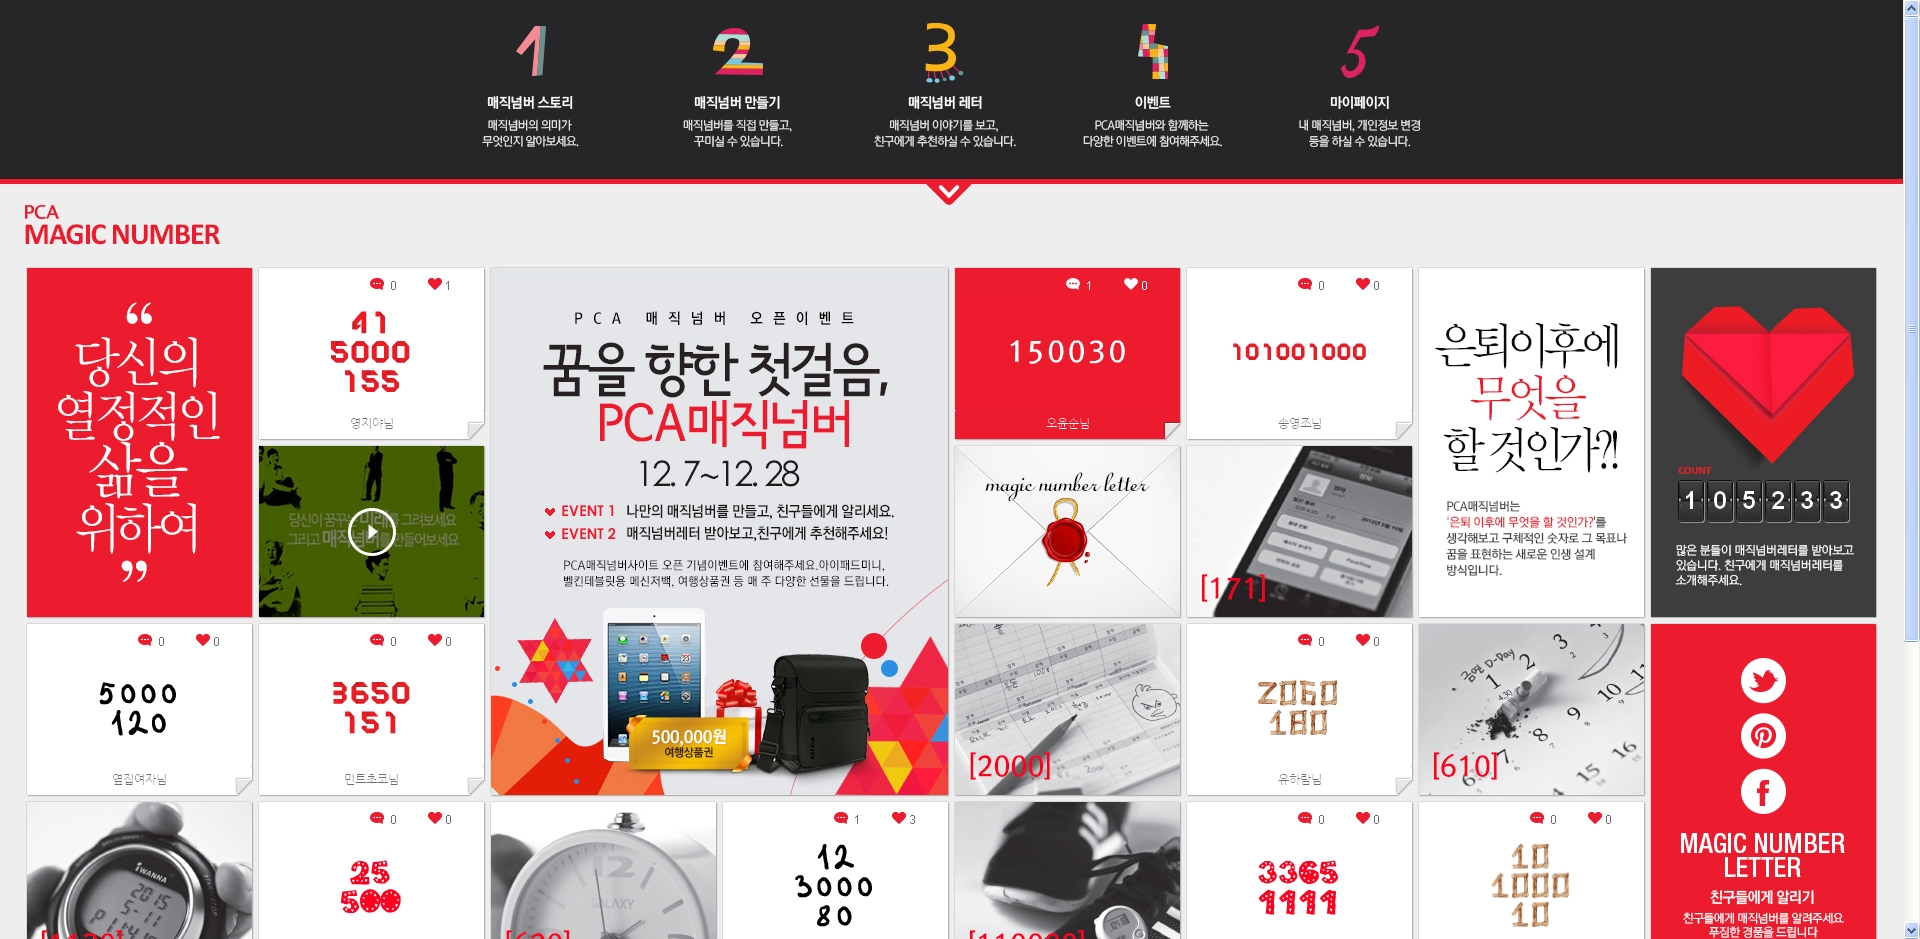 类似九宫格的韩式网页排版设计欣赏!